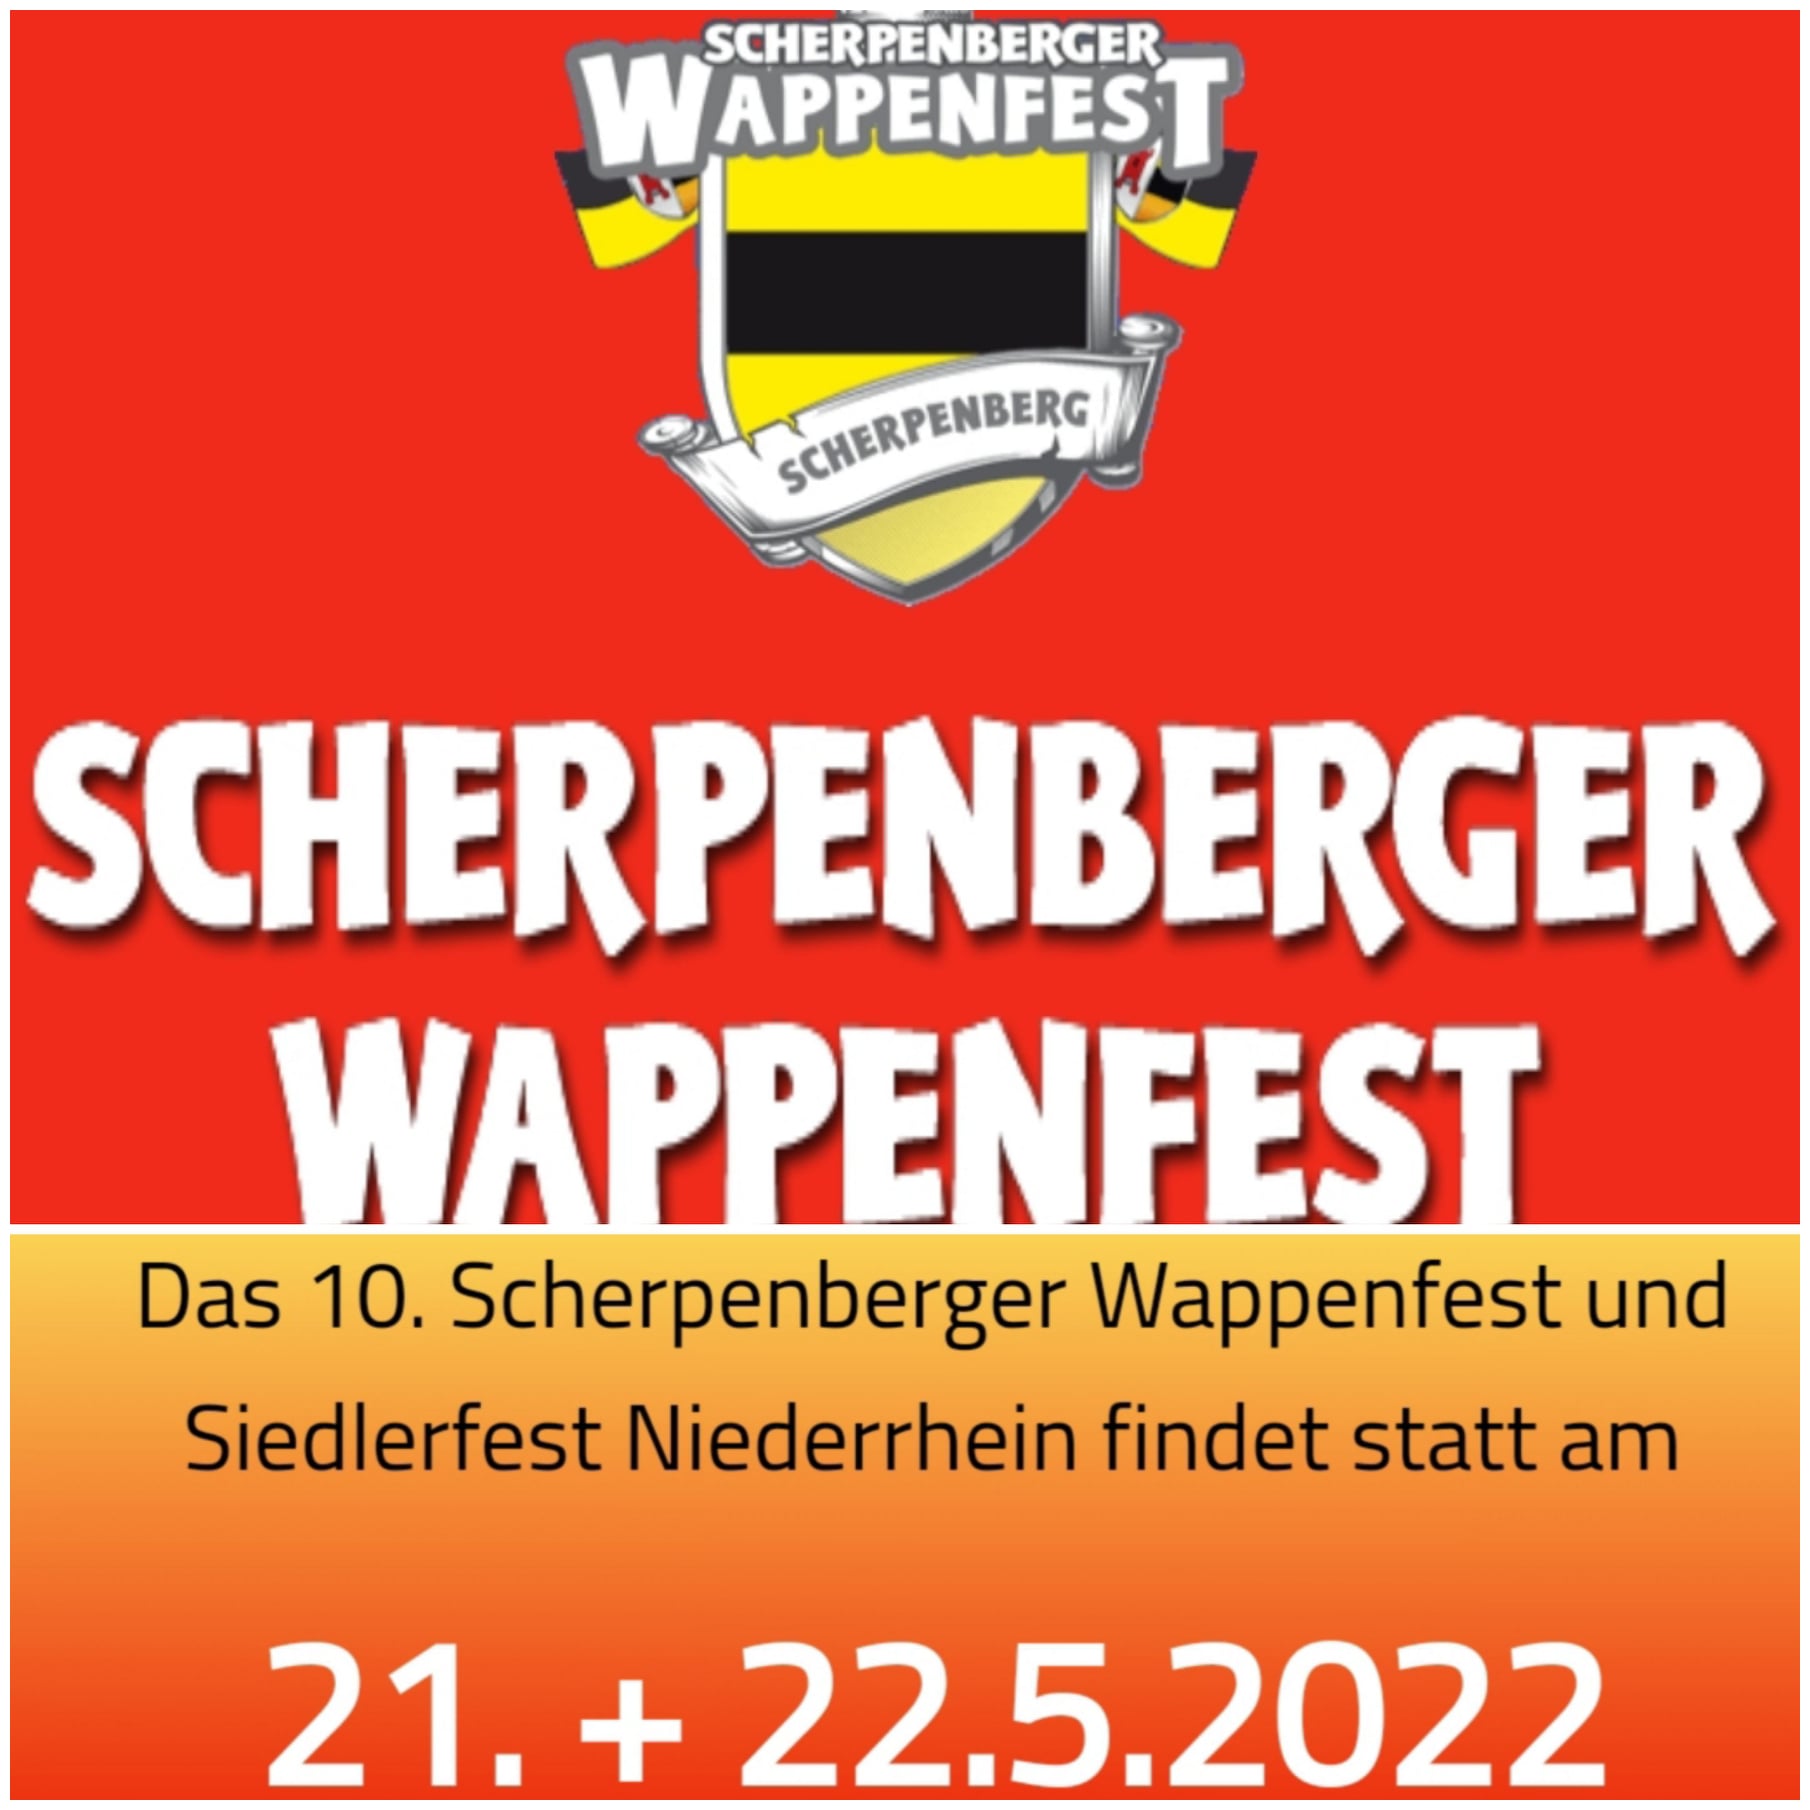 Das 10. Scherpenberger Wappenfest und Siedlerfest Niederrhein wird auf das Jahr 2022 verschoben